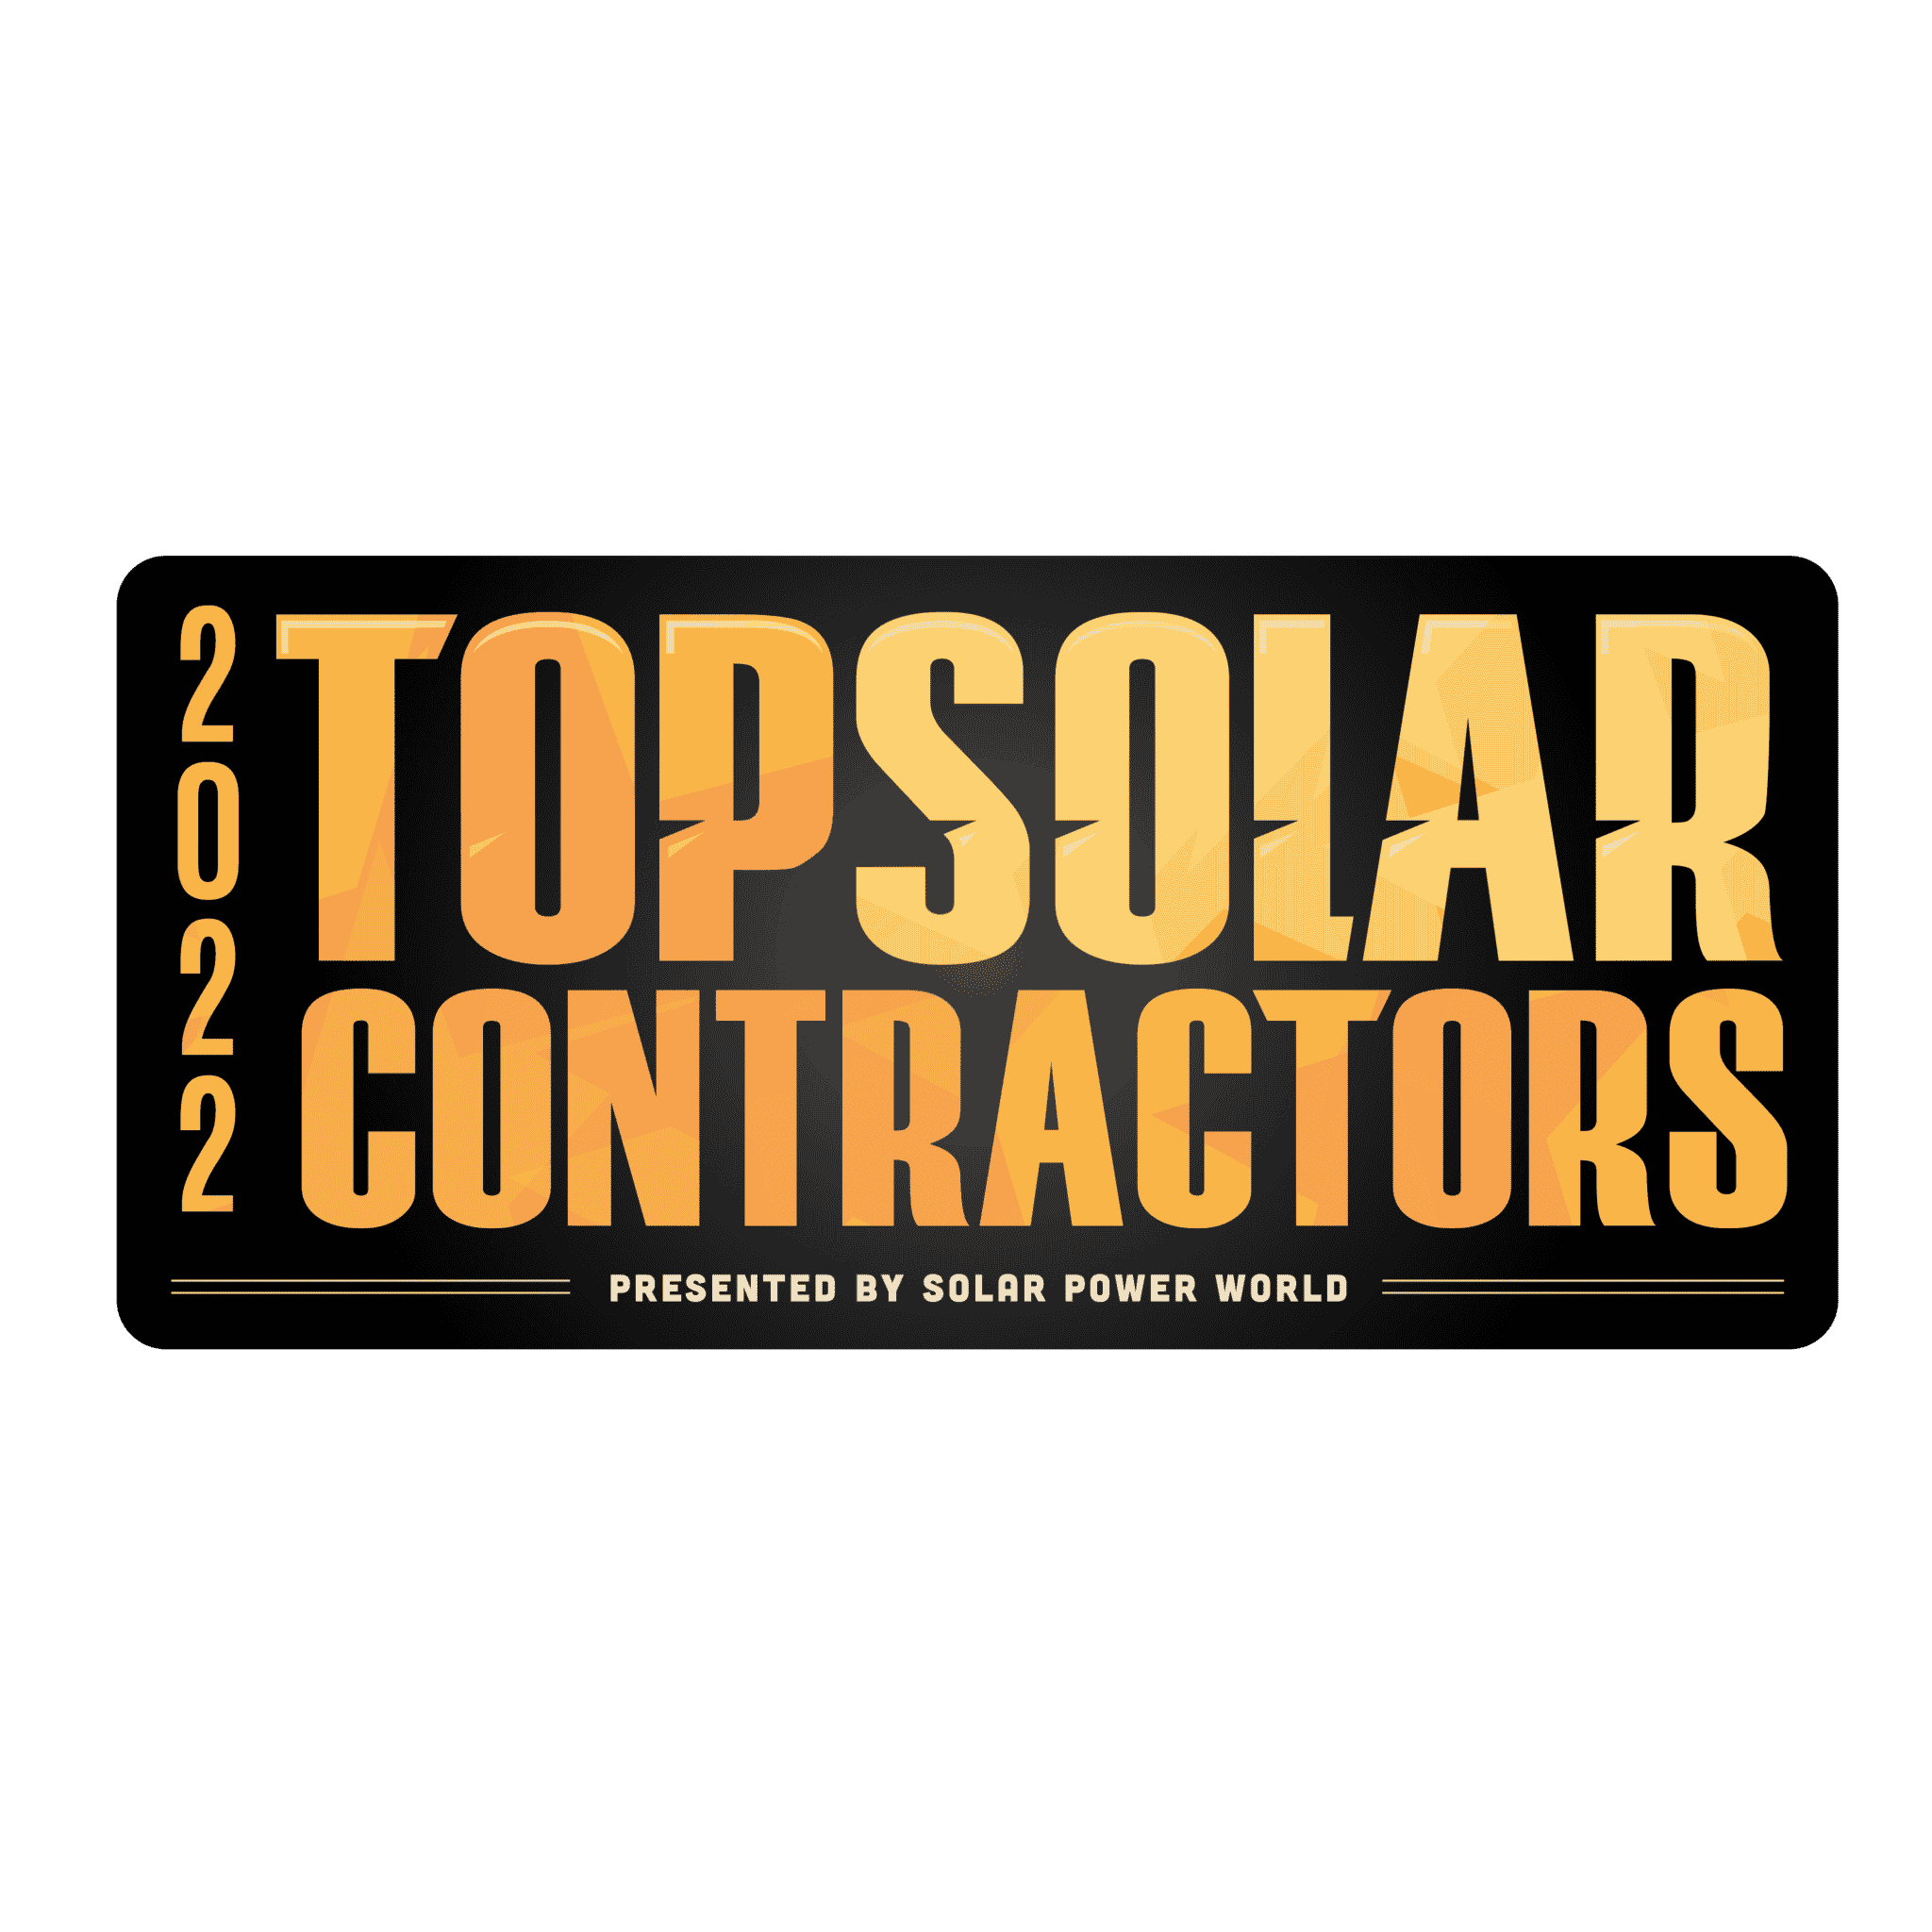 Solar Contractors Vs. Solar Brokers